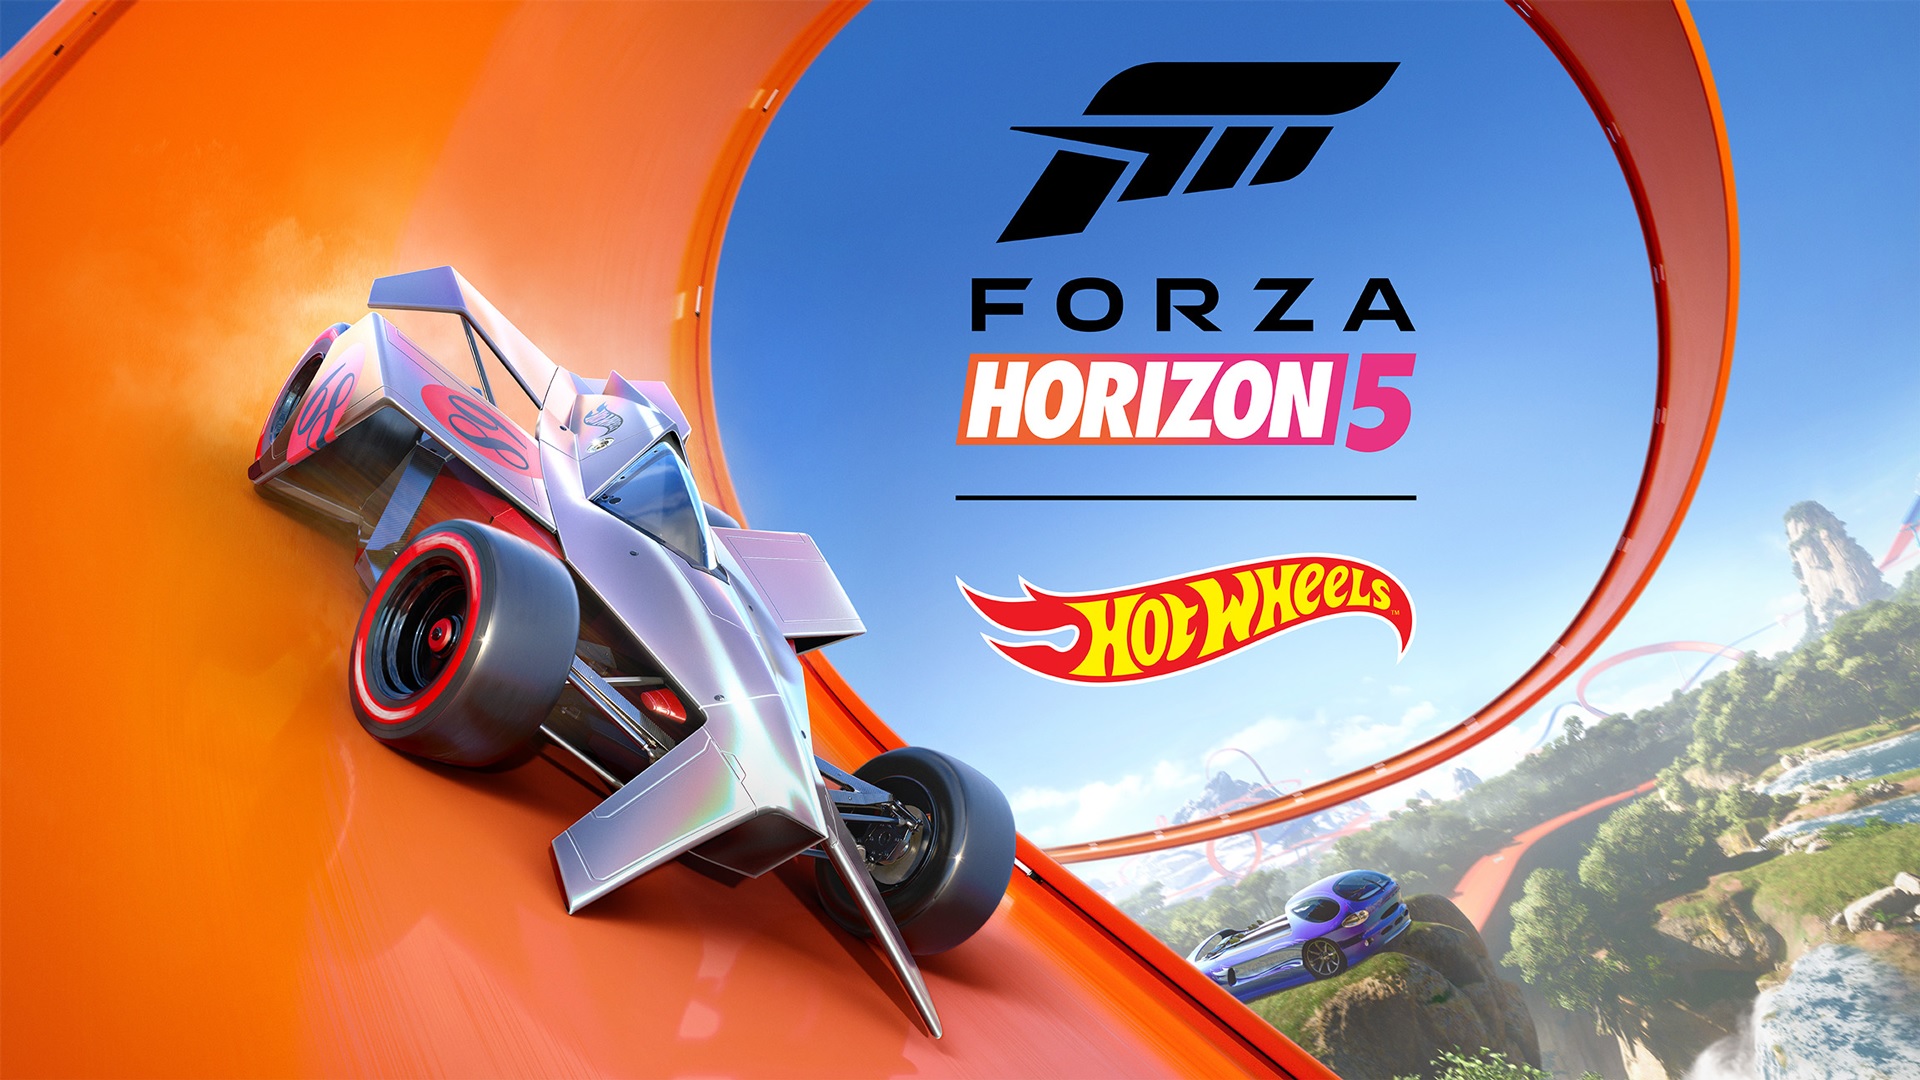 แฟน Hot Wheels ถูกใจแห่เล่น Forza Horizon 5 มากกว่า 1 ล้านคน